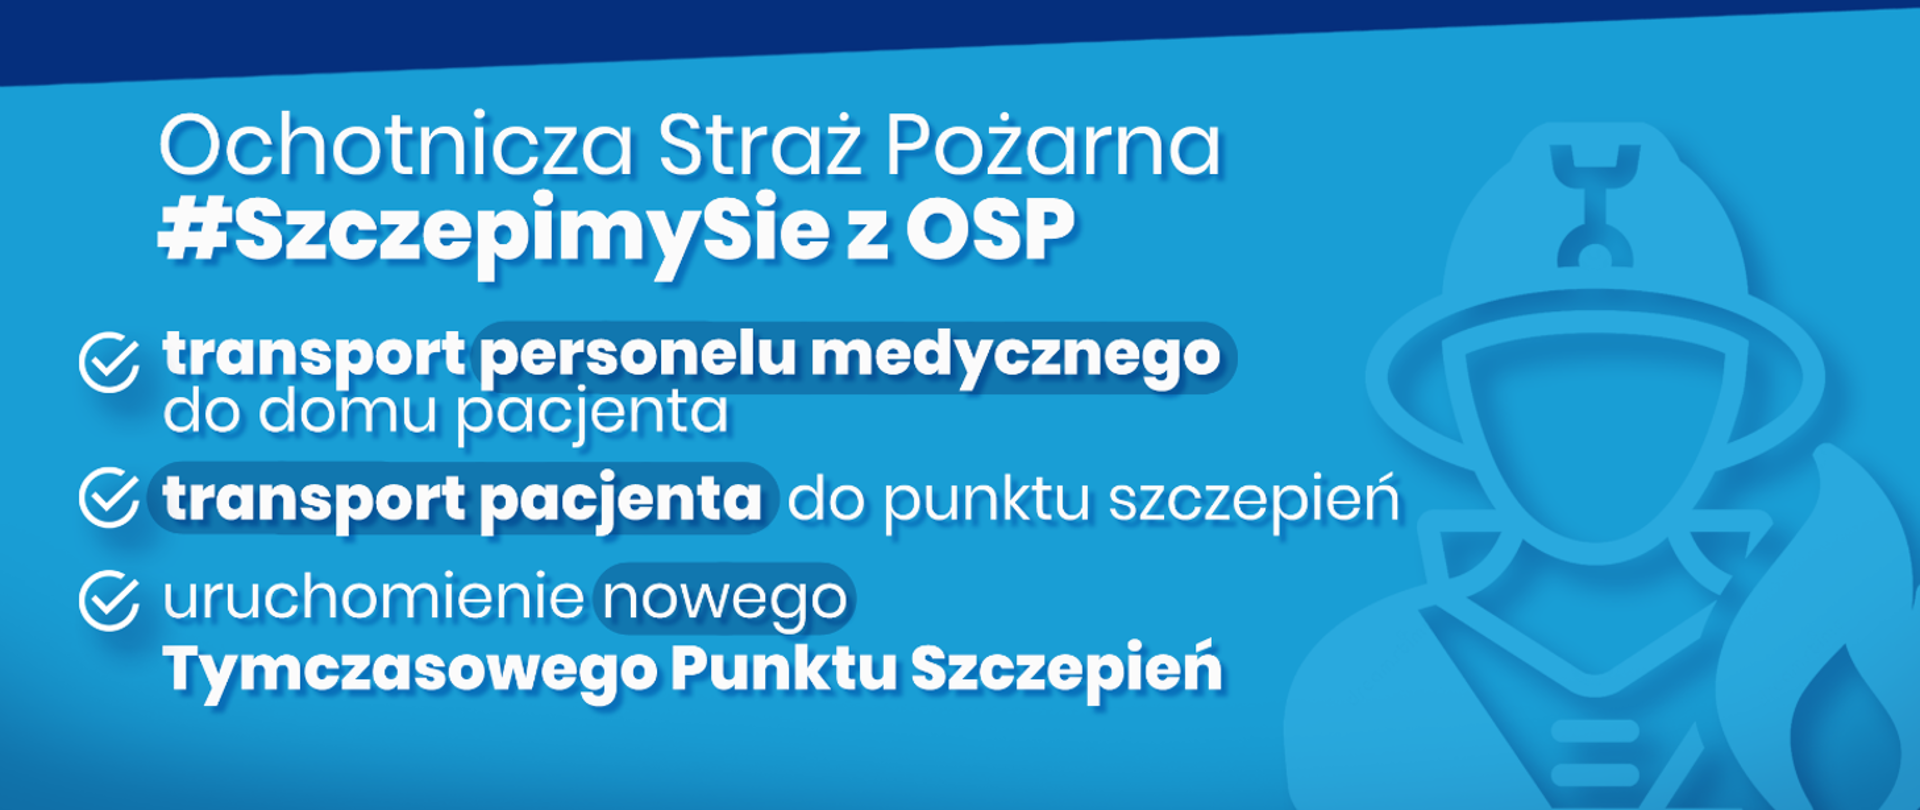 Zdjęcie przedstawia baner reklamowy akcji #SzczepimySię z OSP